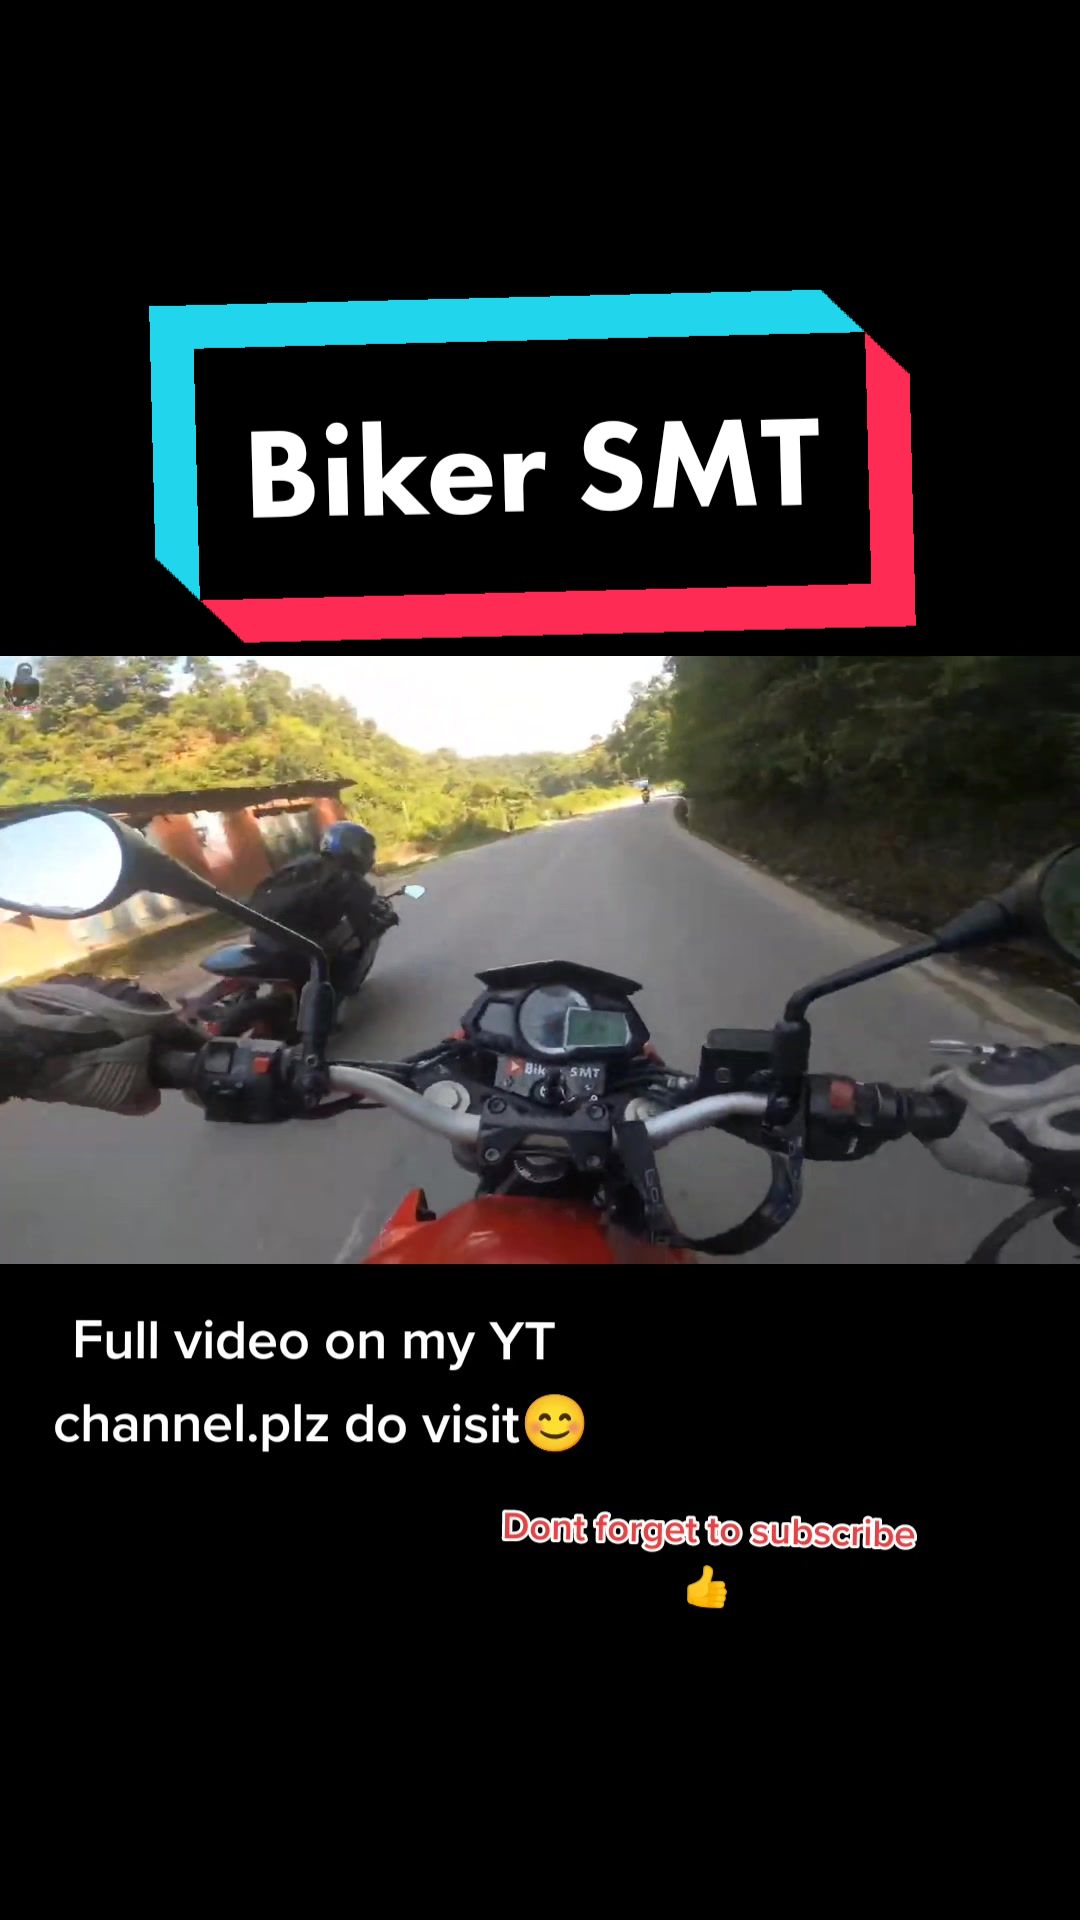 @🏍️ Biker SMT